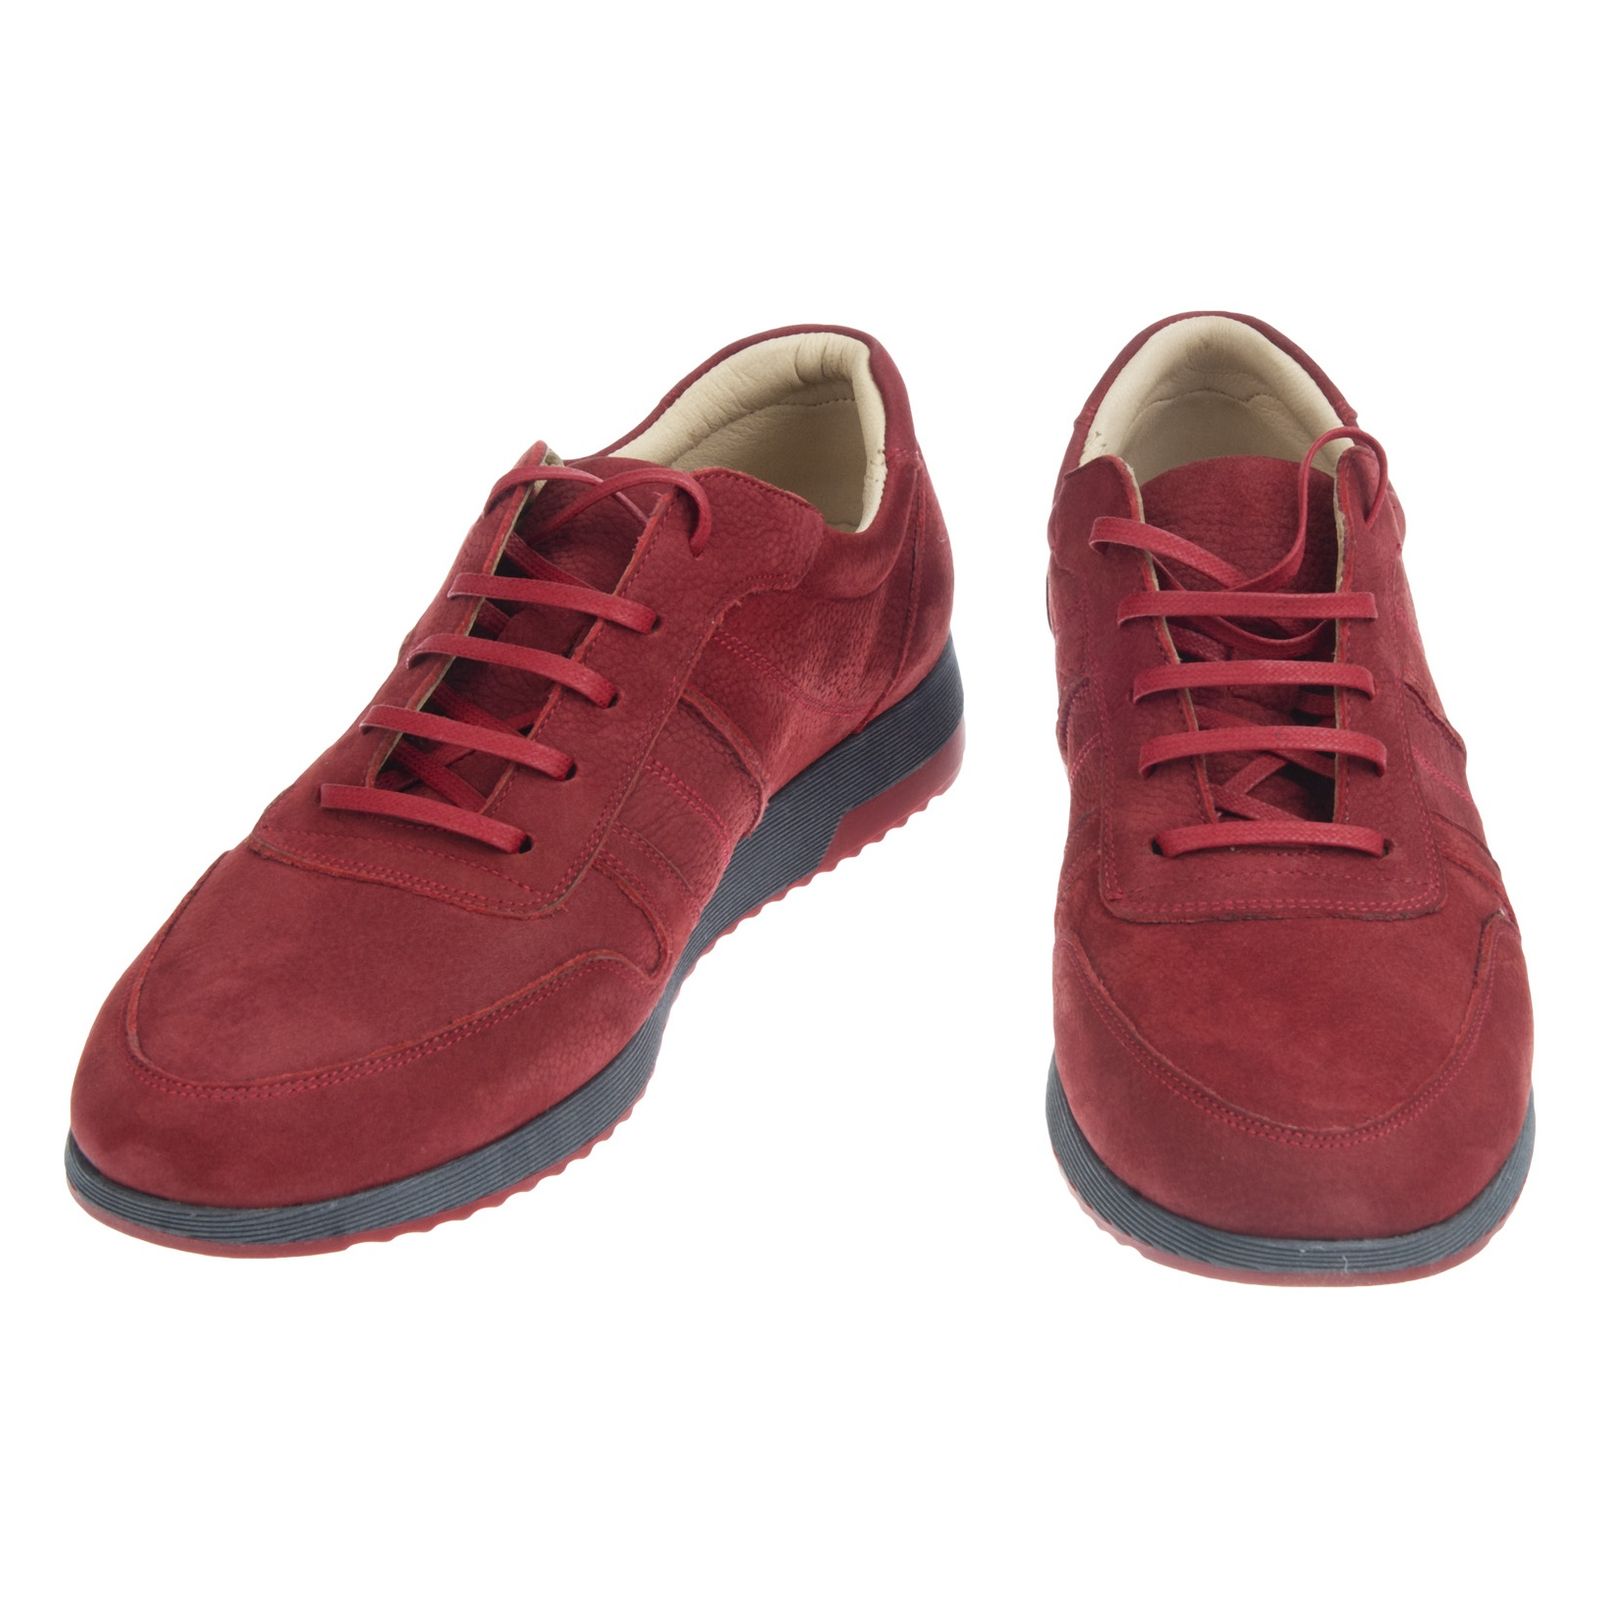 کفش روزمره زنانه برتونیکس مدل 725-24 - قرمز - 4